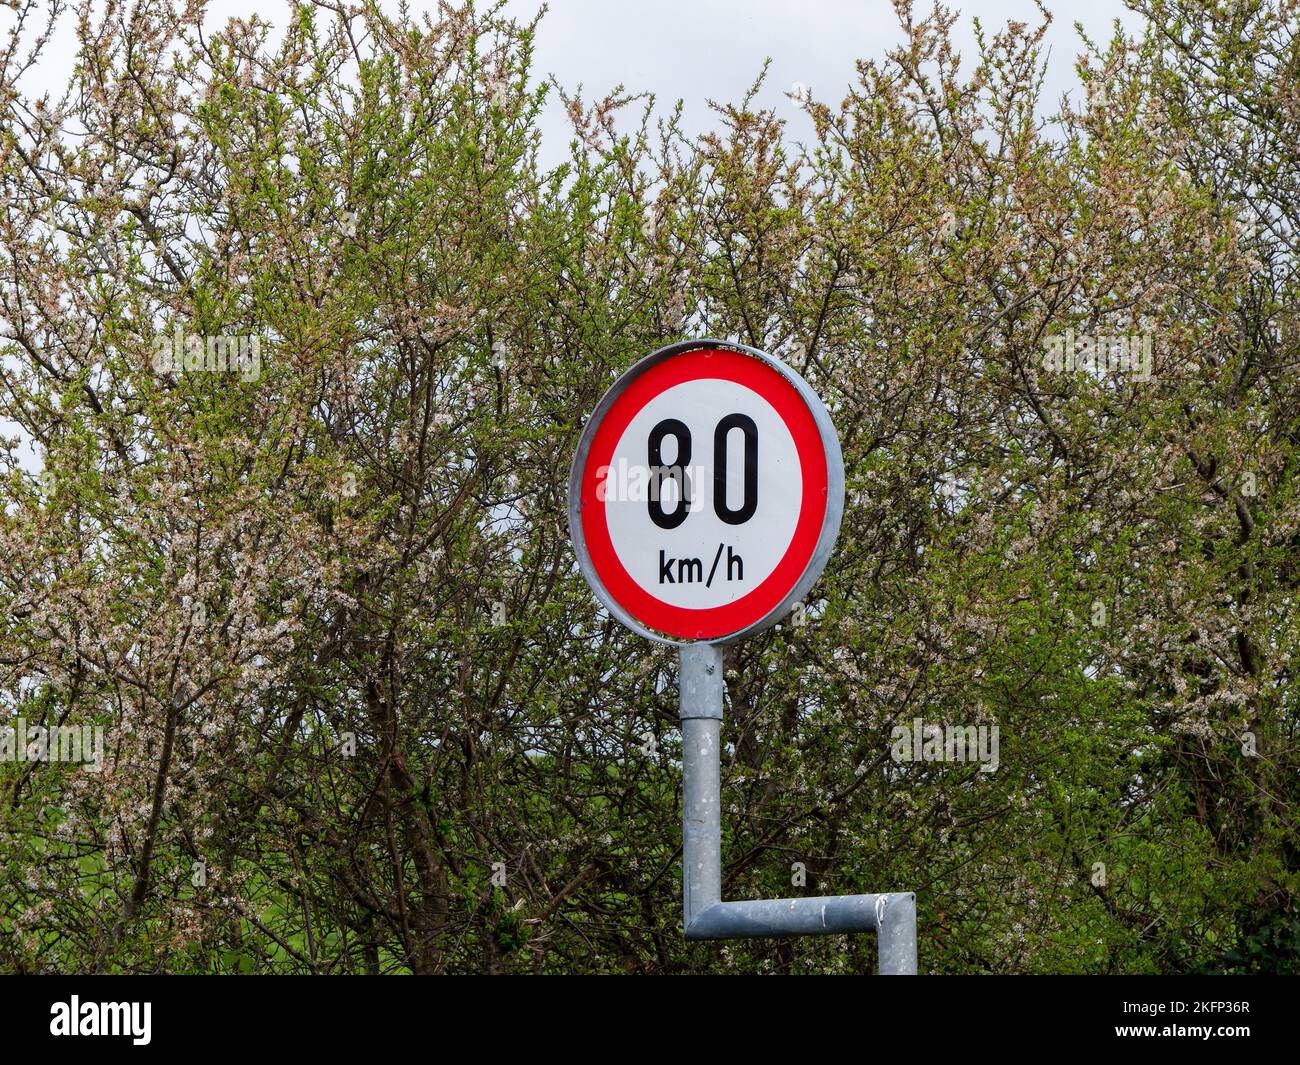 Rundschild Warnung über Geschwindigkeitsbegrenzungen, Bäume. Die Geschwindigkeitsbegrenzung beträgt 80 km h. Schild bei grünen Bäumen Stockfoto